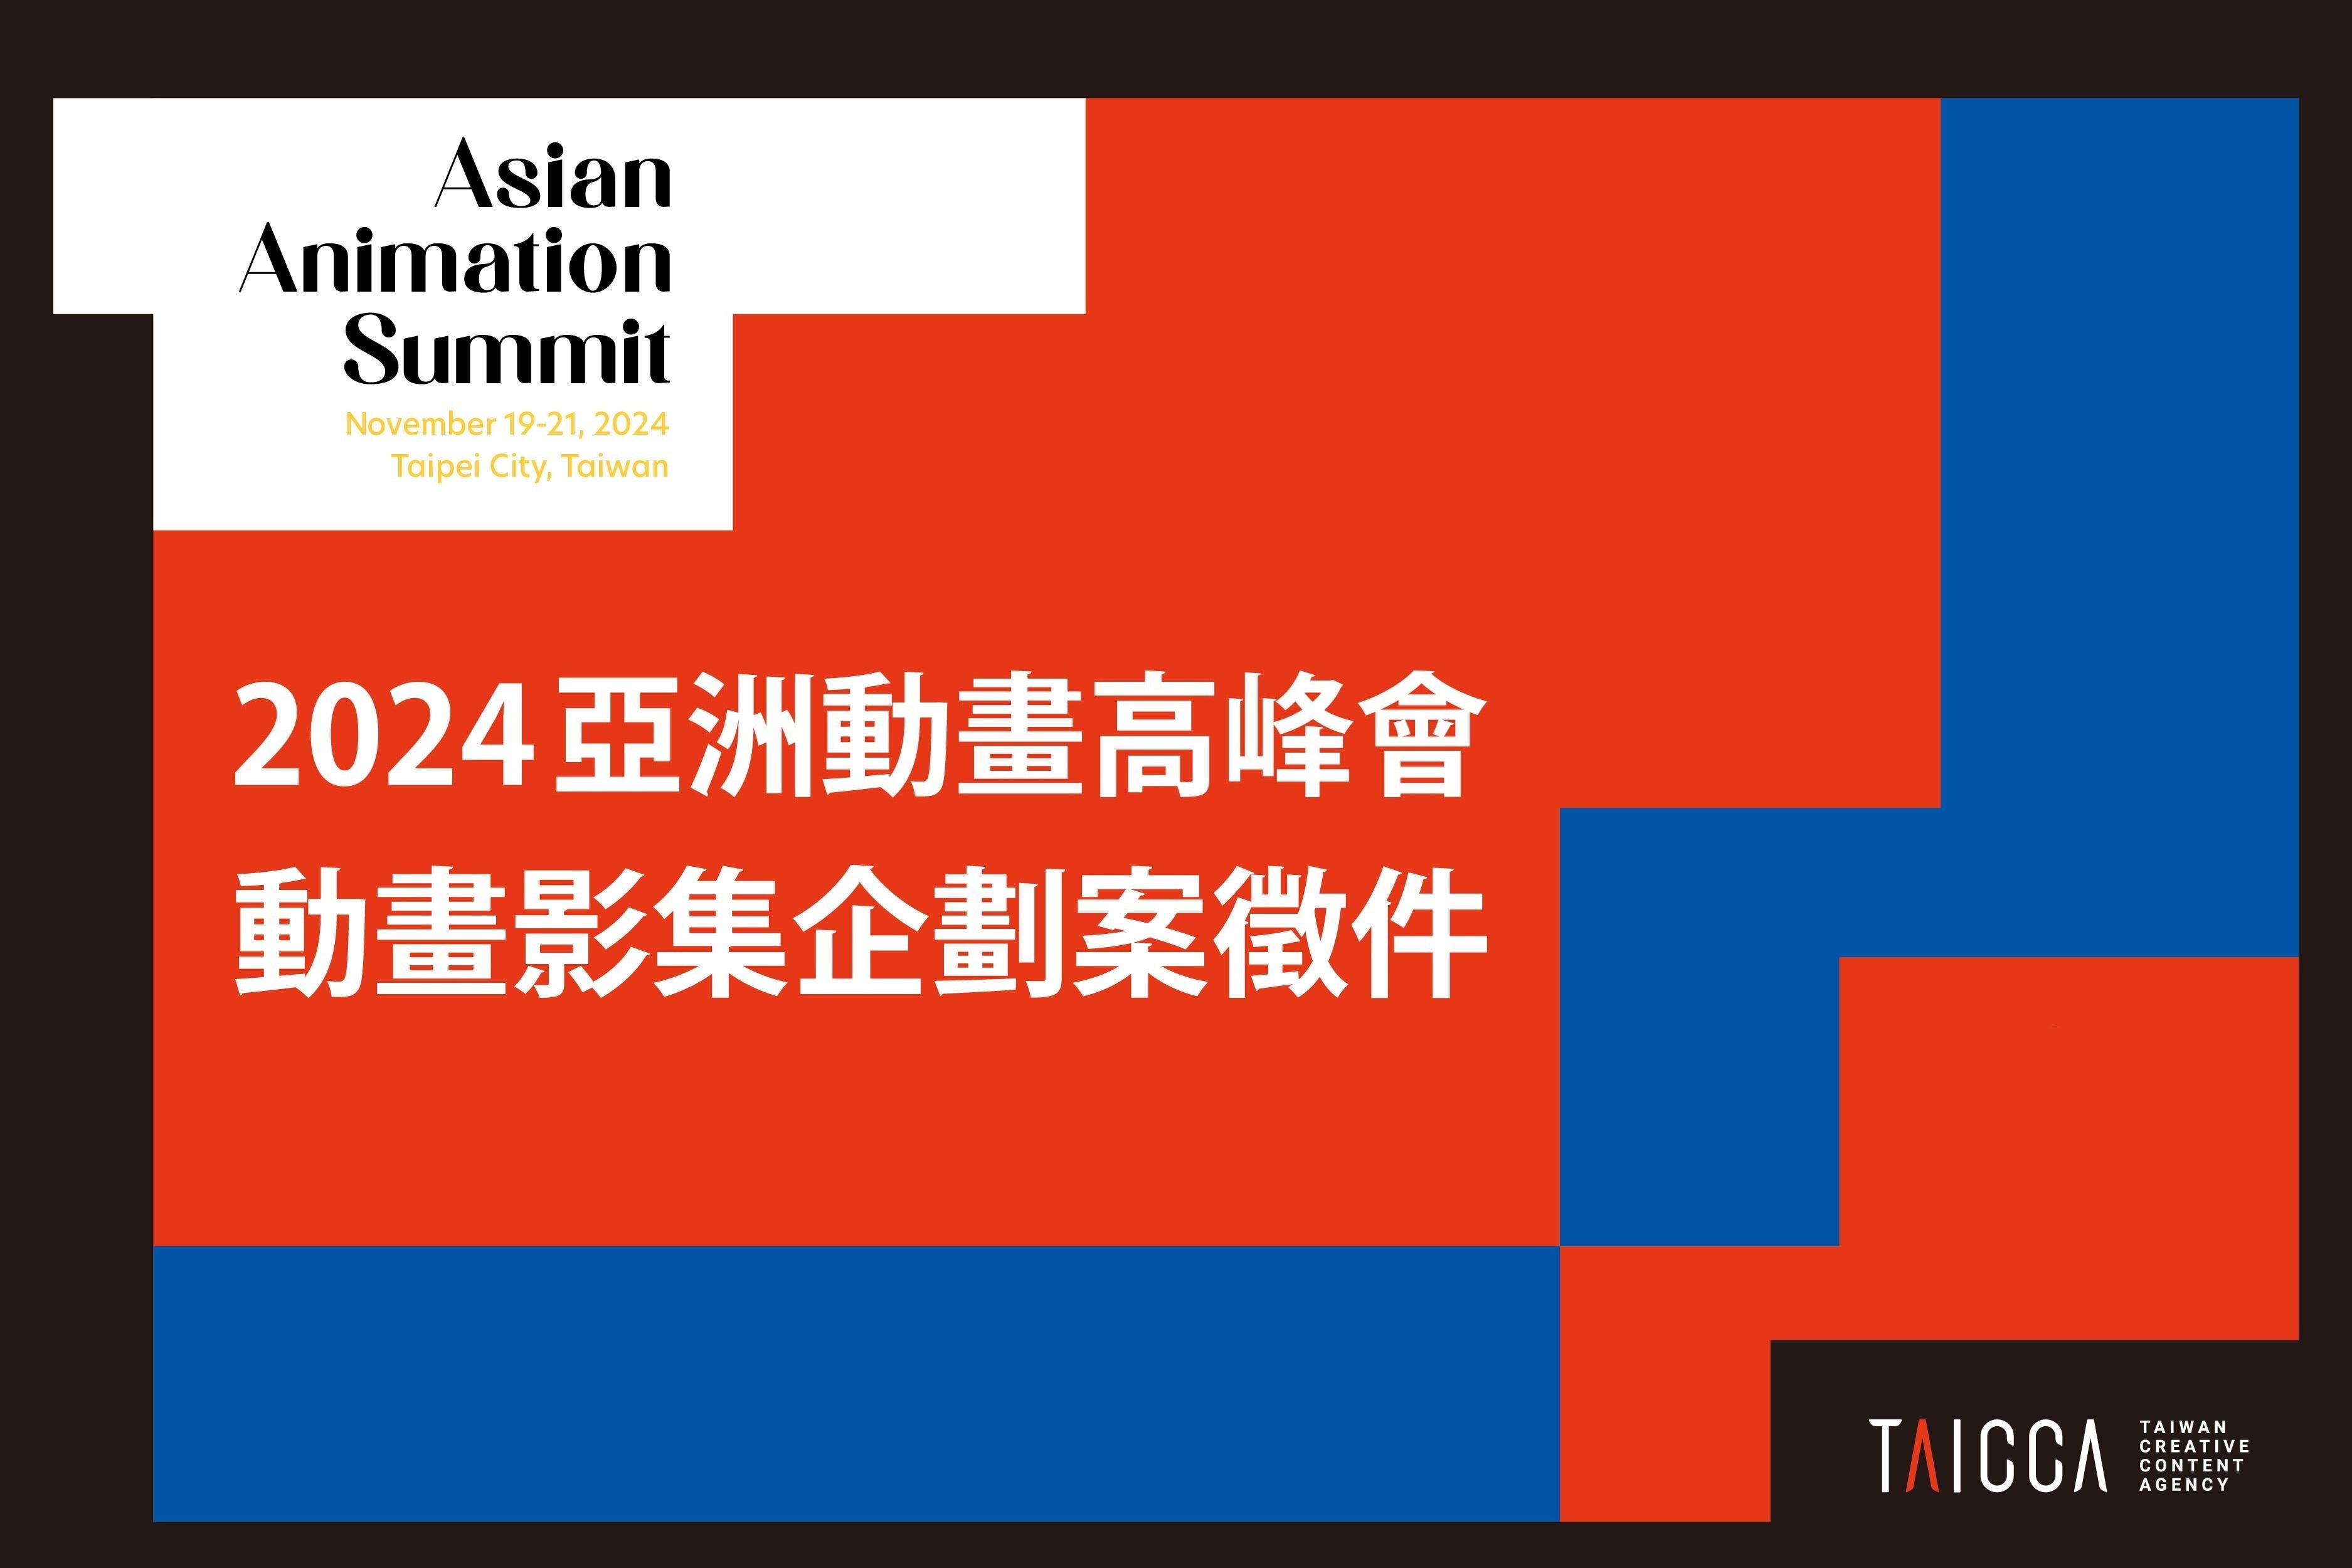 動畫企劃案徵件「2024 Asian Animation Summit 亞洲動畫高峰會」 